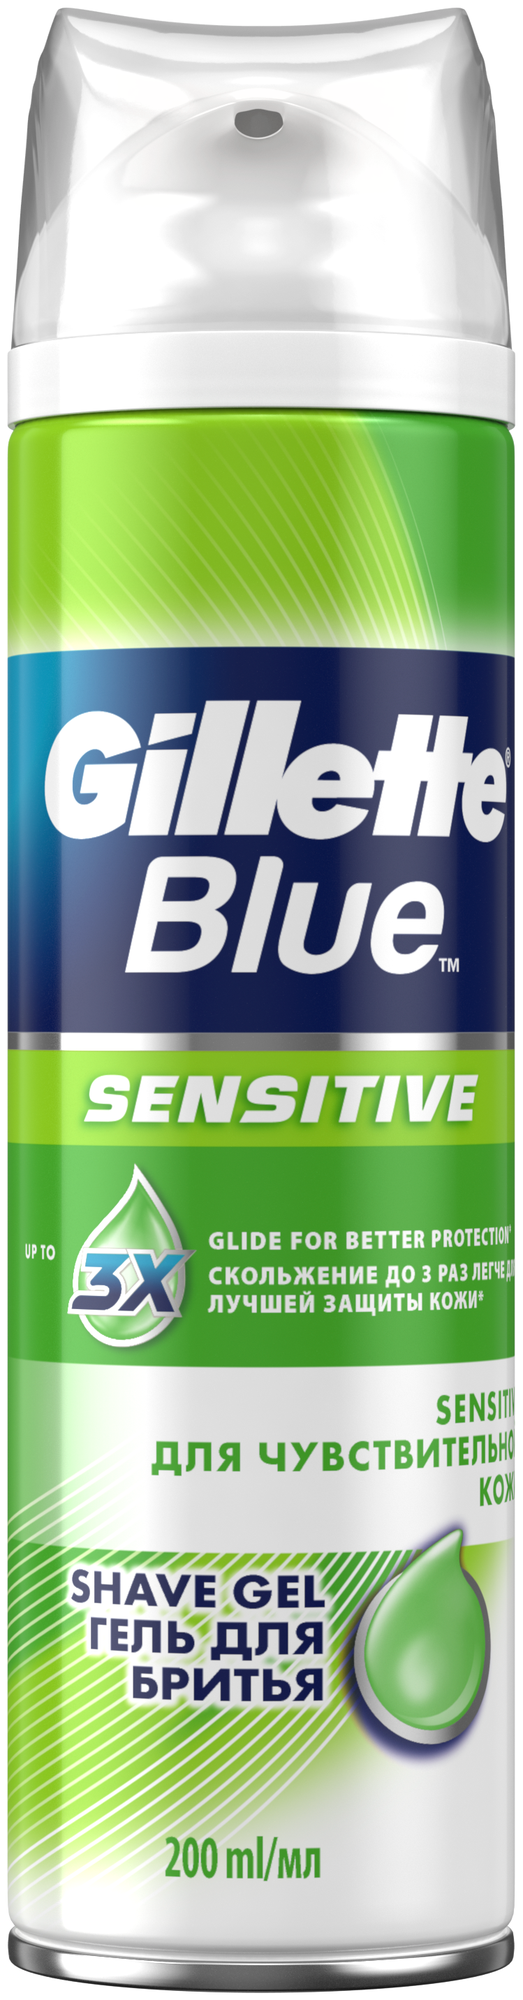 Гель для бритья Blue Sensitive для чувствительной кожи Gillette